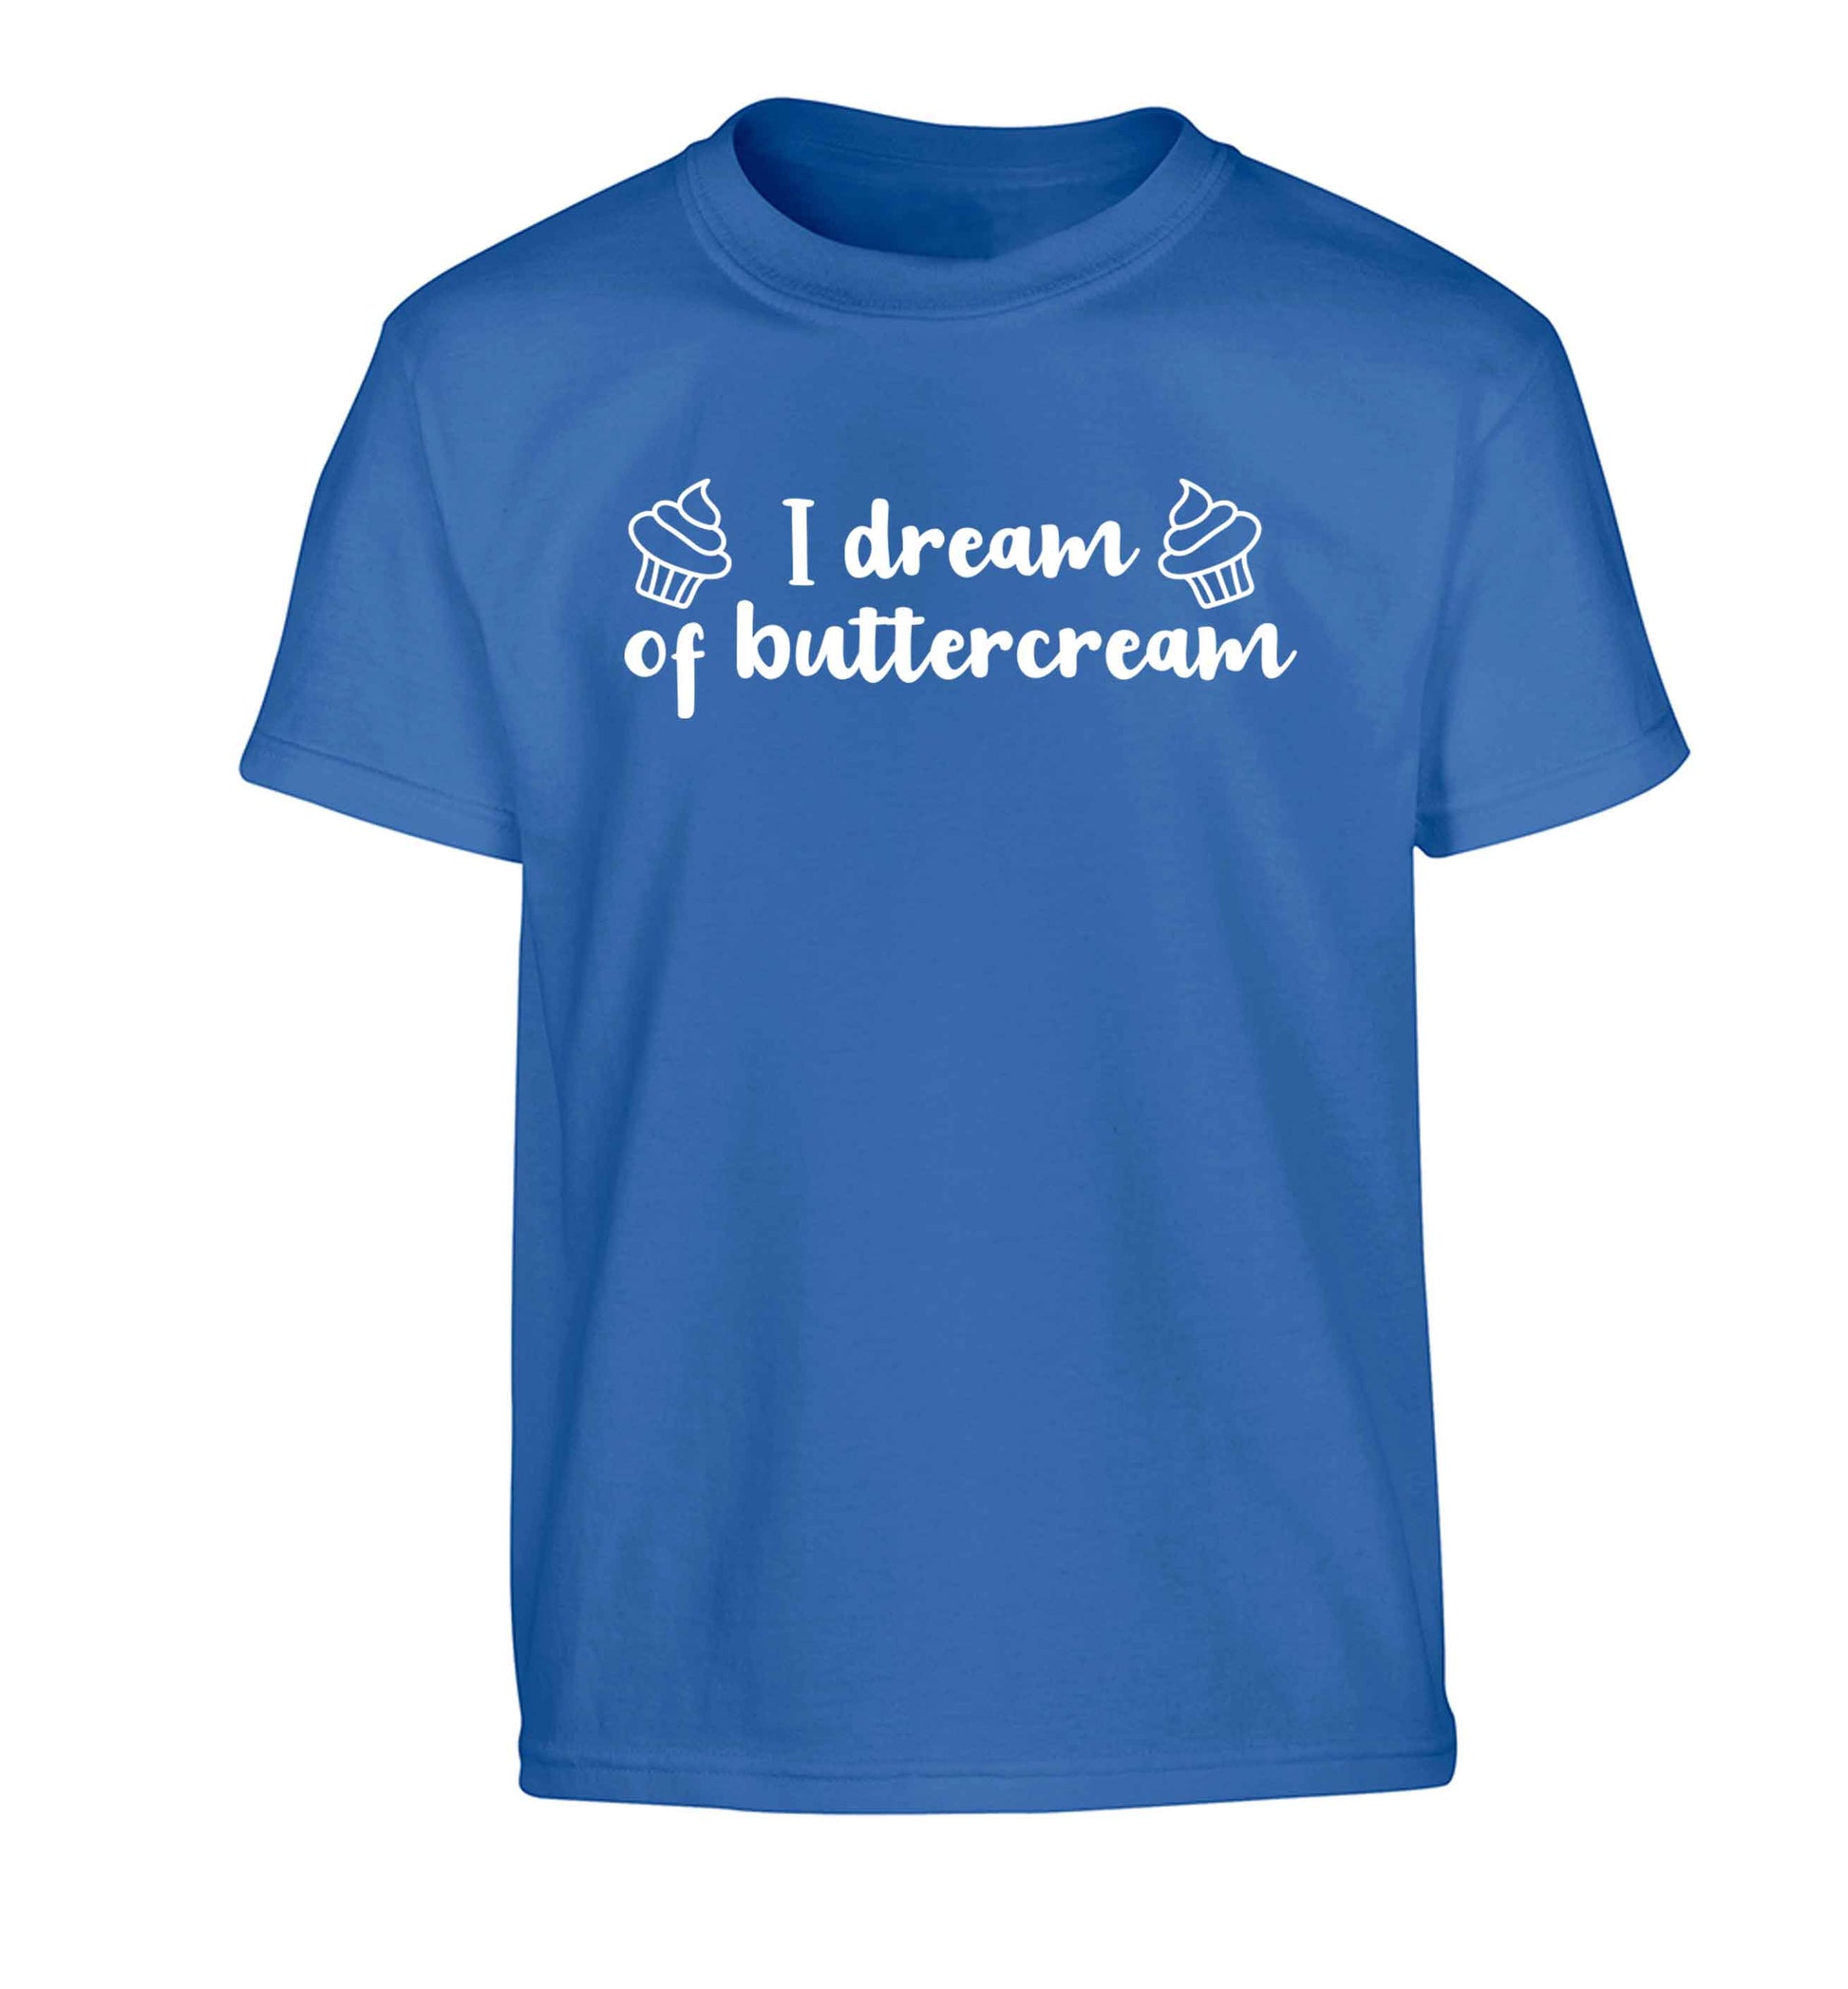 I dream of buttercream Children's blue Tshirt 12-13 Years